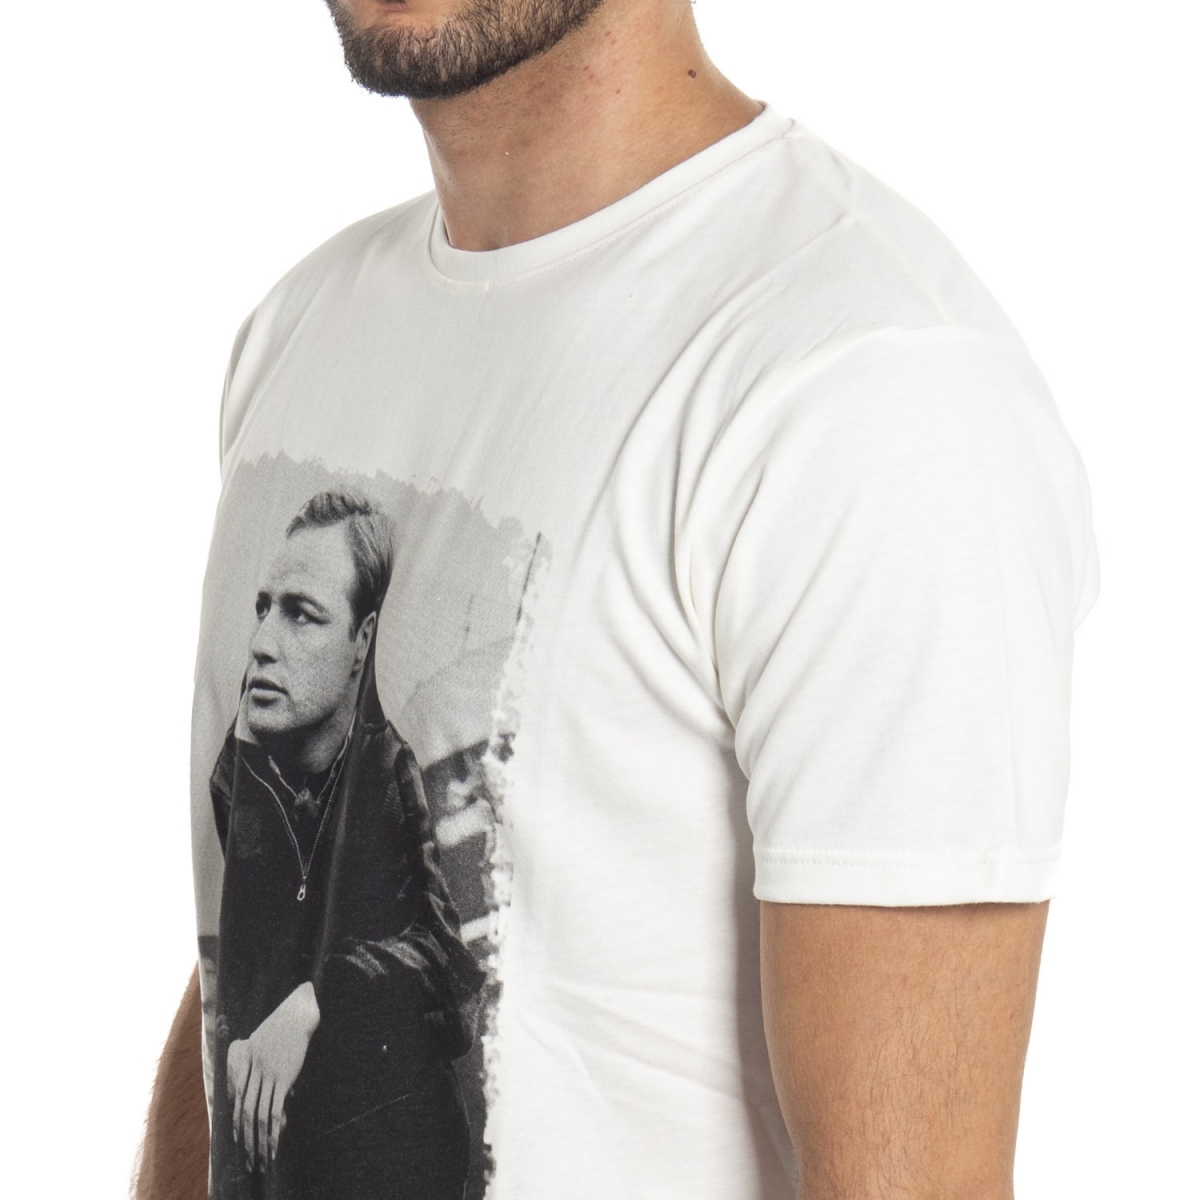 Kleidung T-shirt mann T-Shirt LPX16-34 LANDEK PARK Cafedelmar Shop